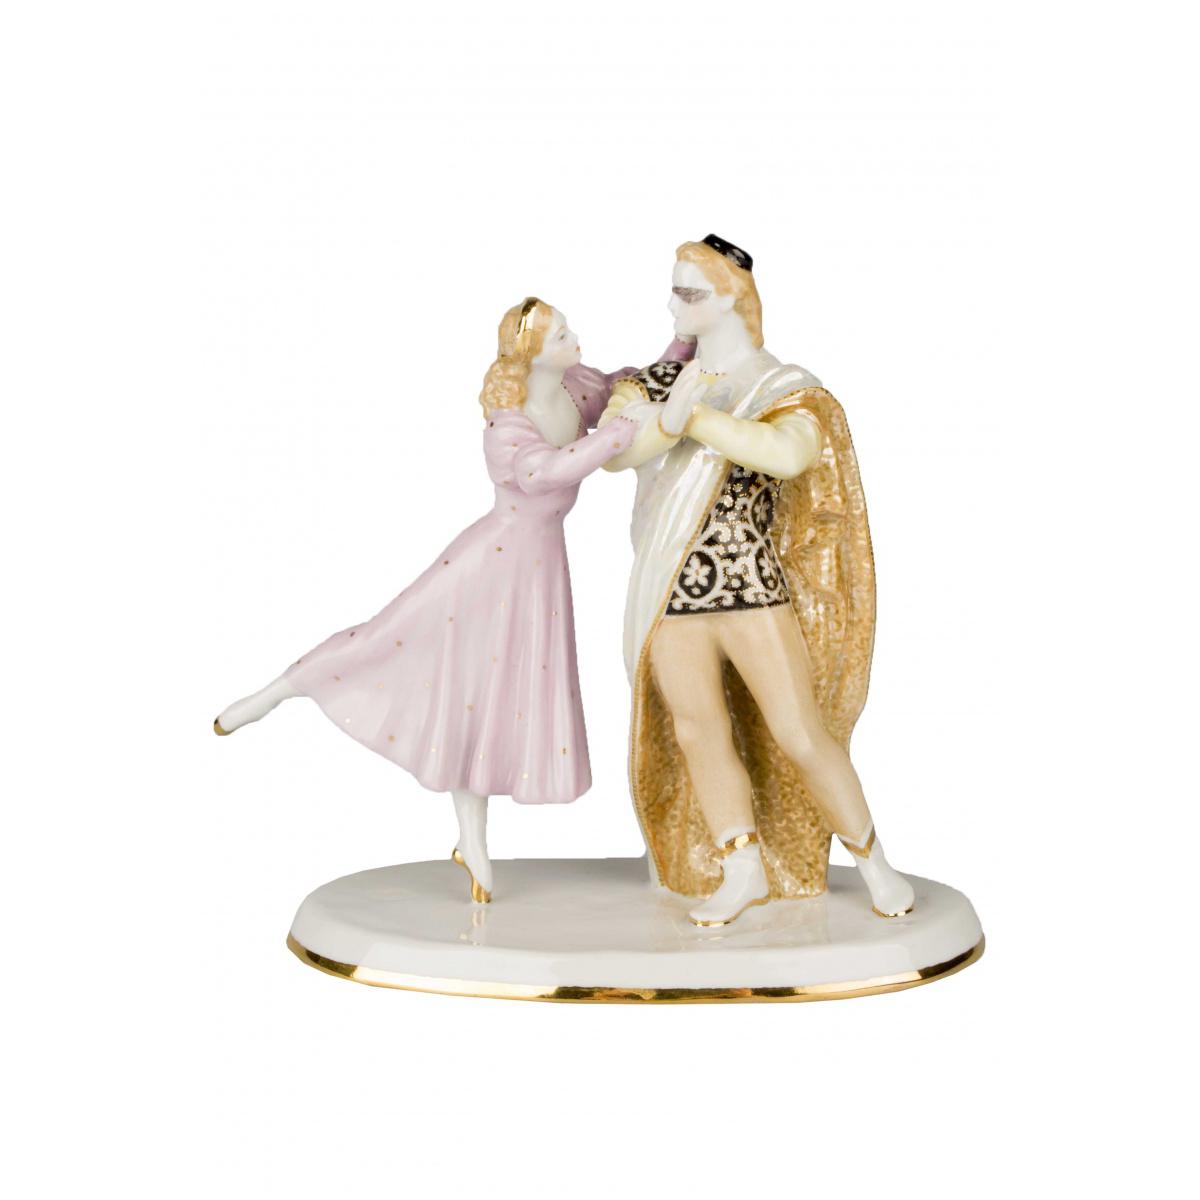 Скульптура"Ромео и Джульетта" автор Бржезицкая  А.Д.